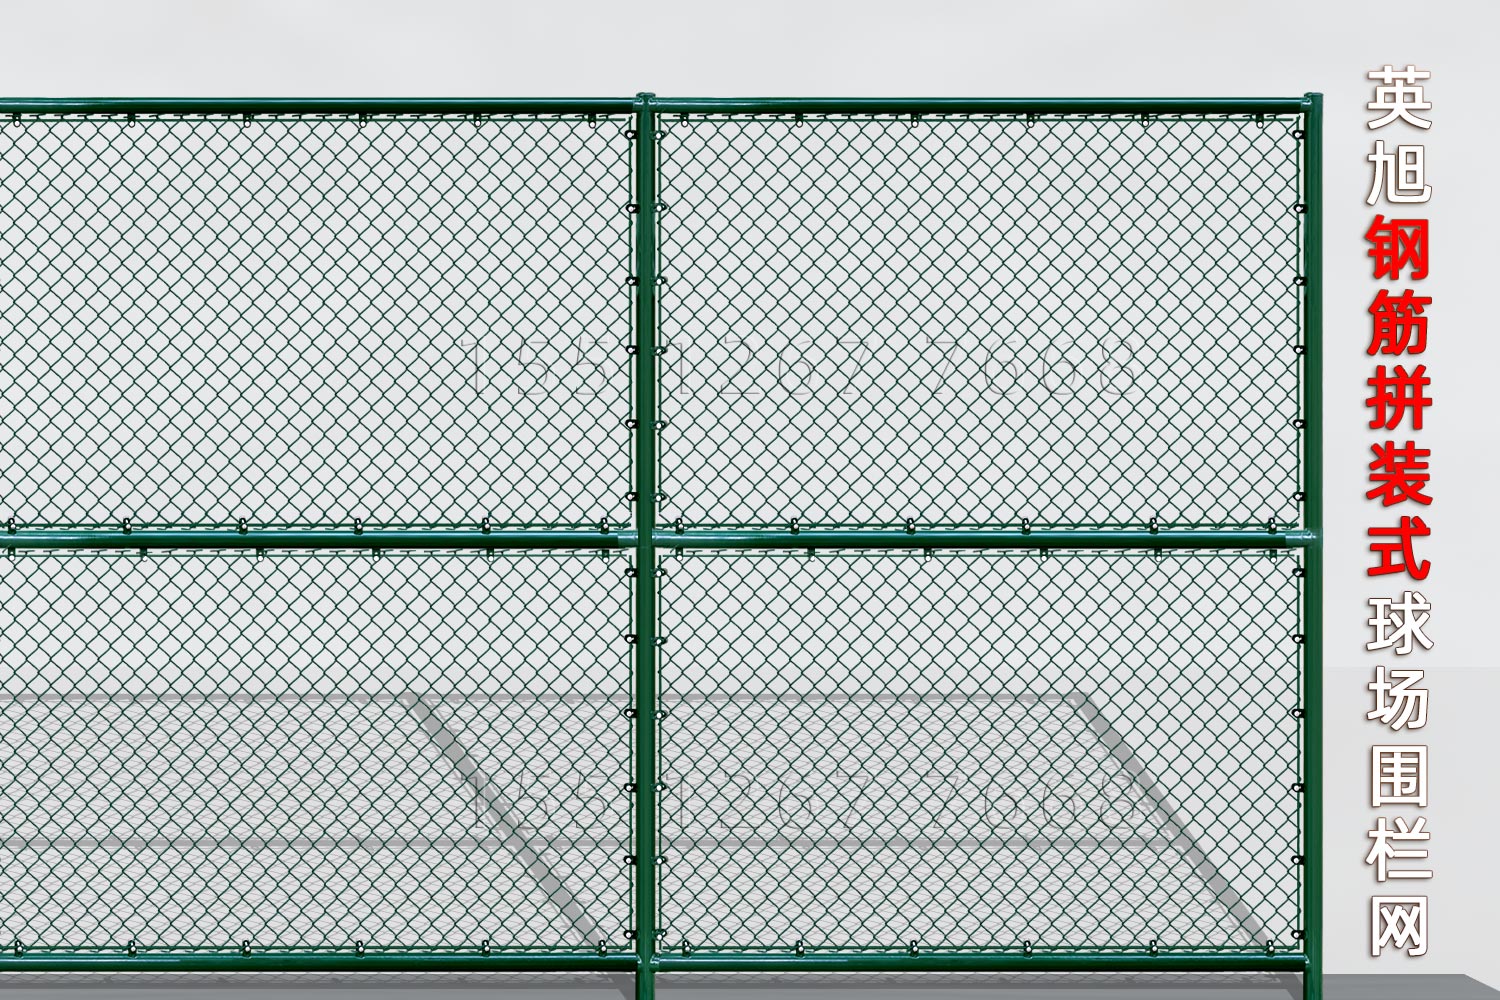 内蒙古钢筋组装式球场围栏网